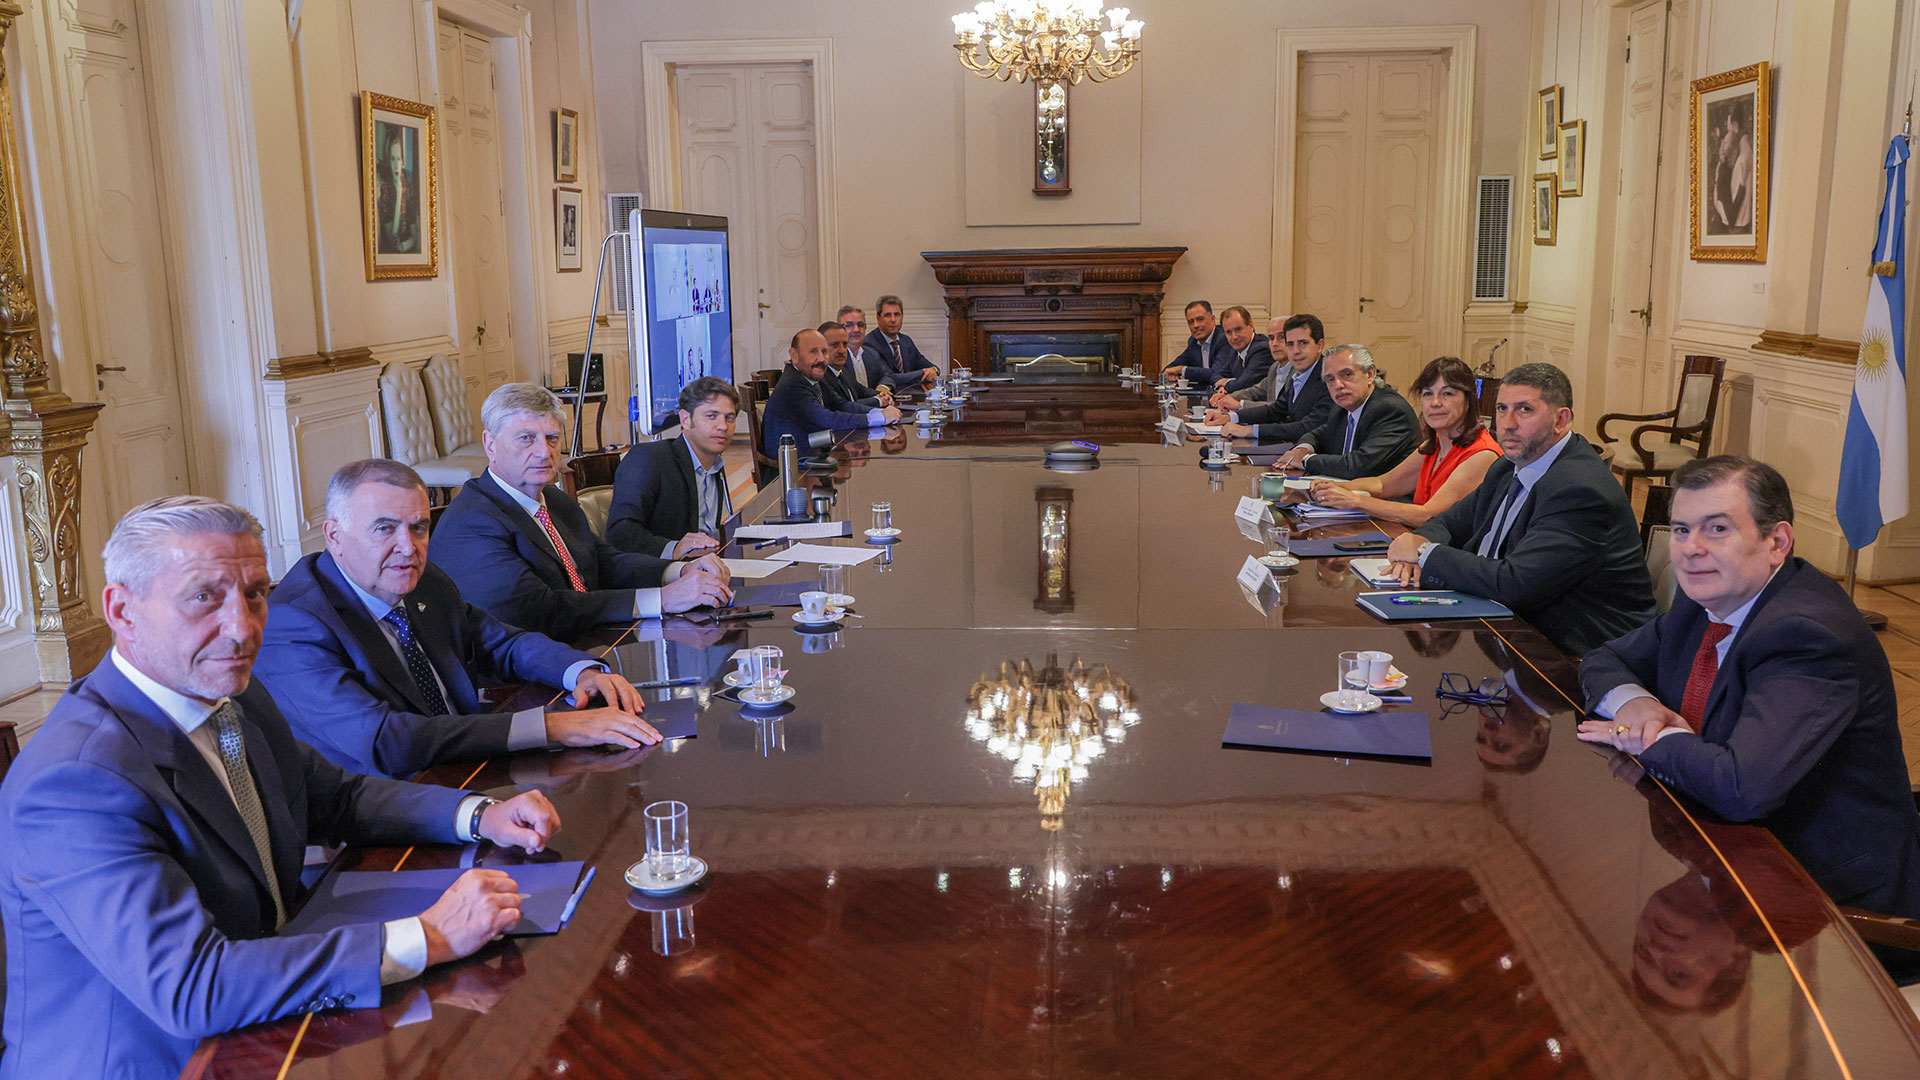 La reunión del Presidente con los gobernadores. Entre los presentes y varios ausentes rutilantes.